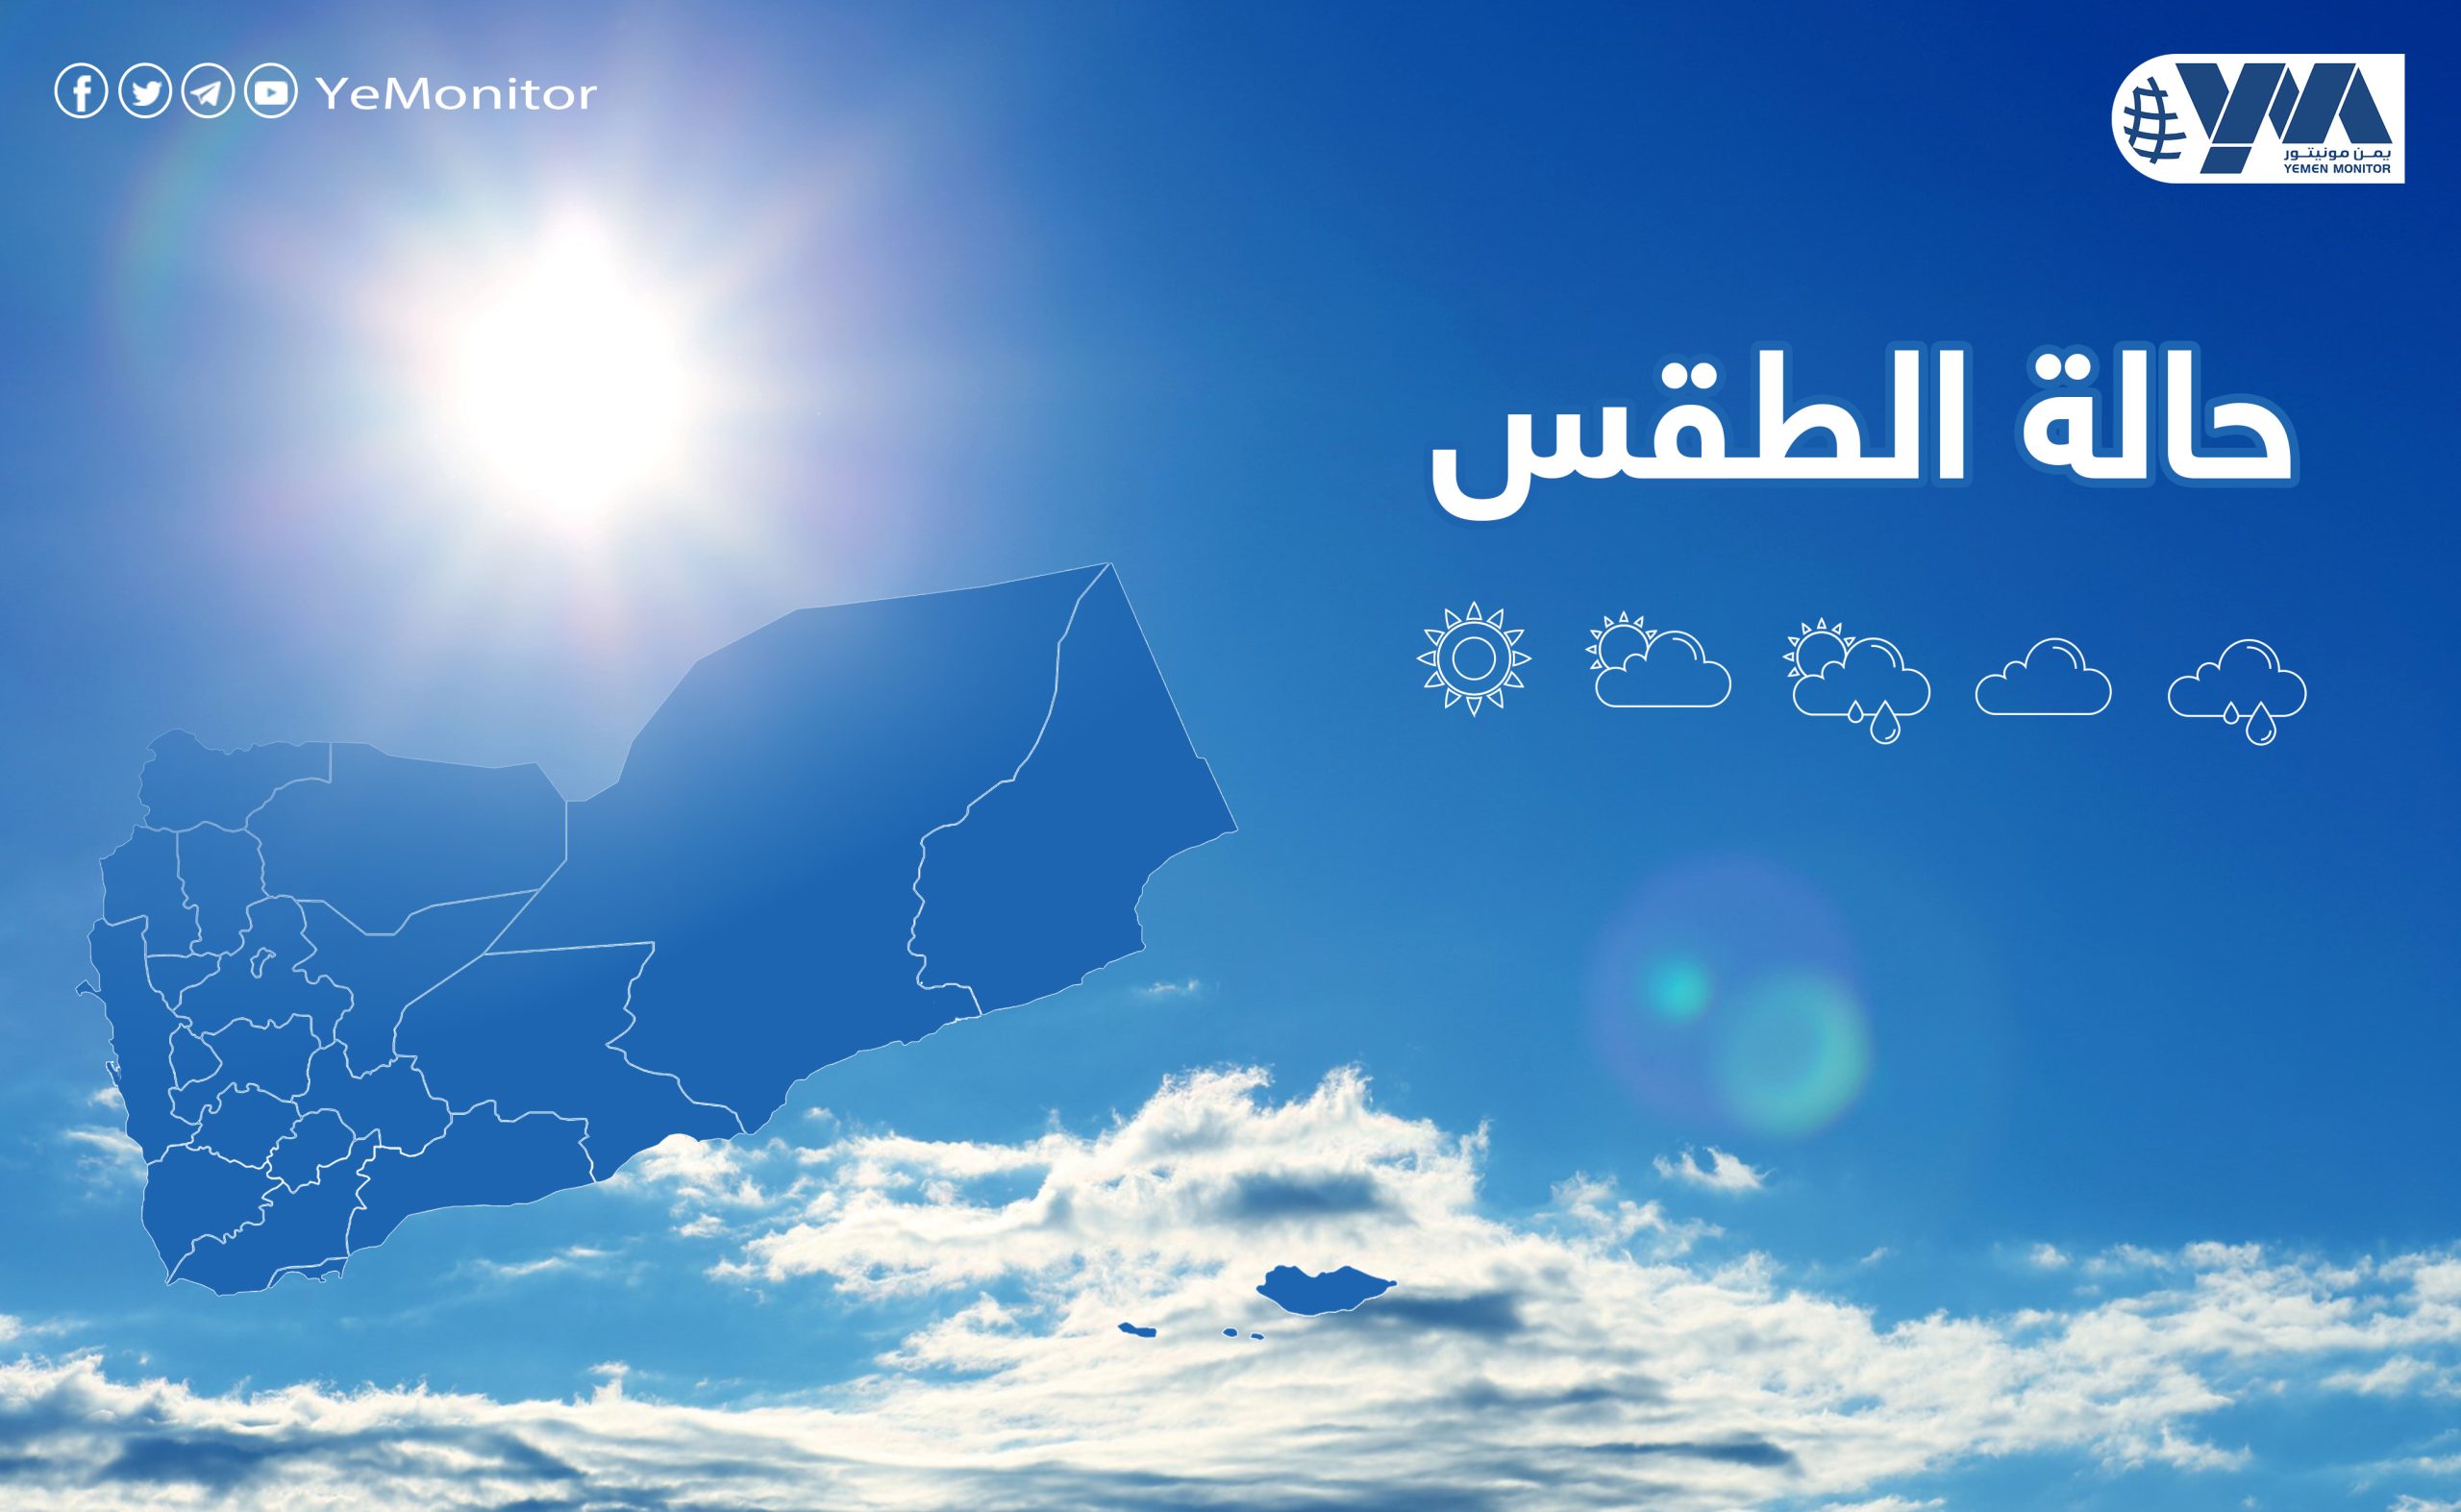 “الأرصاد اليمني” يتوقع أجواء باردة أثناء الليل والصباح الباكر على عدة محافظات